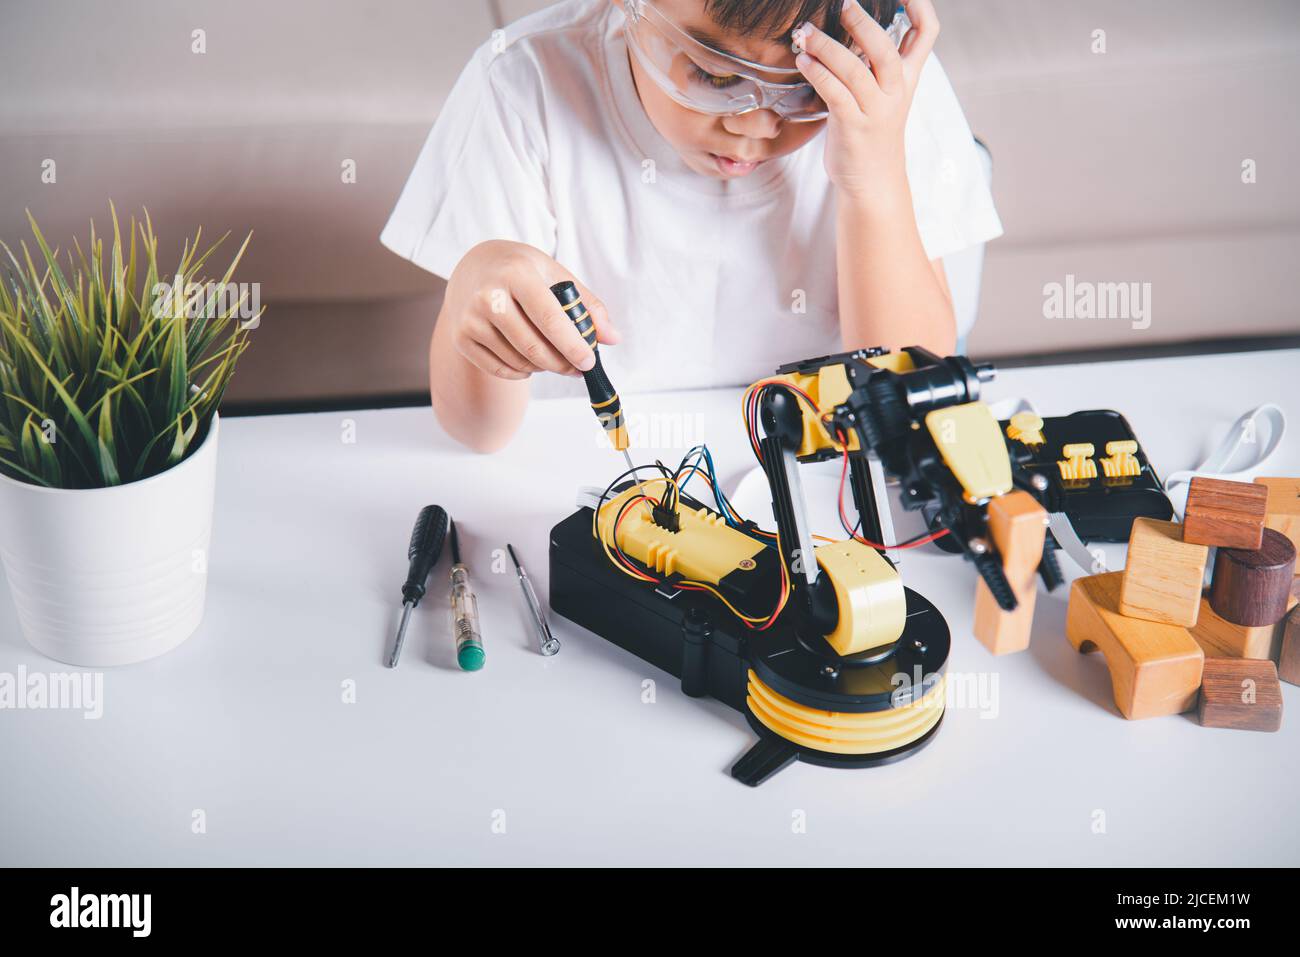 Niño aprendiendo reparando consiguiendo el brazo del robot del control de  la lección, niño pequeño asiático feliz usando el destornillador para fijar  el brazo robótico de la máquina de los tornillos en